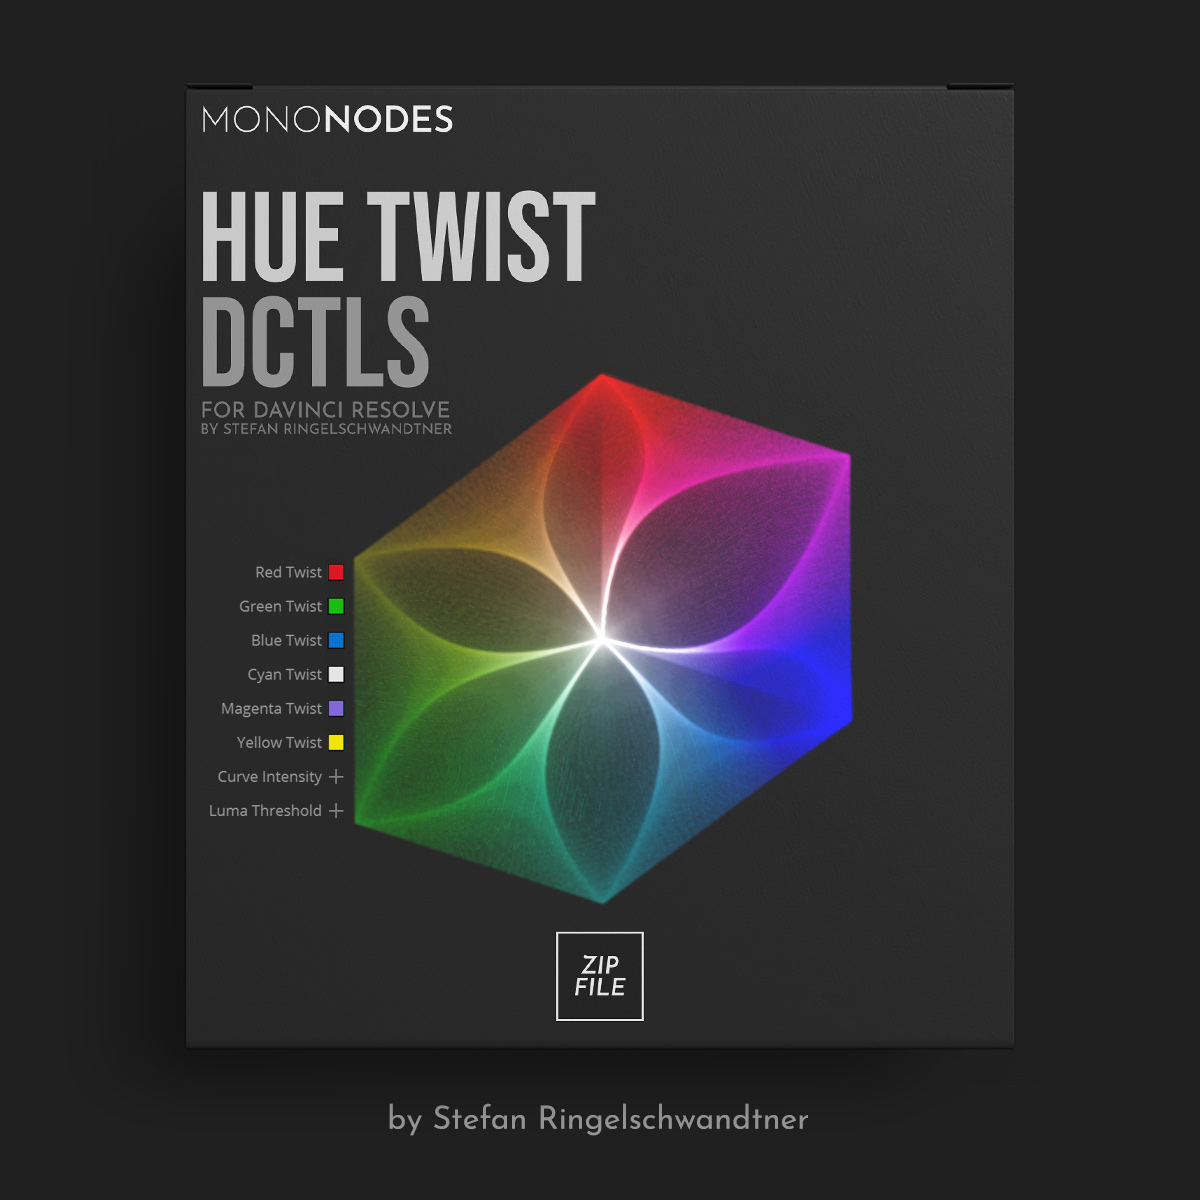 Mononodes - HUE TWIST DCTLS